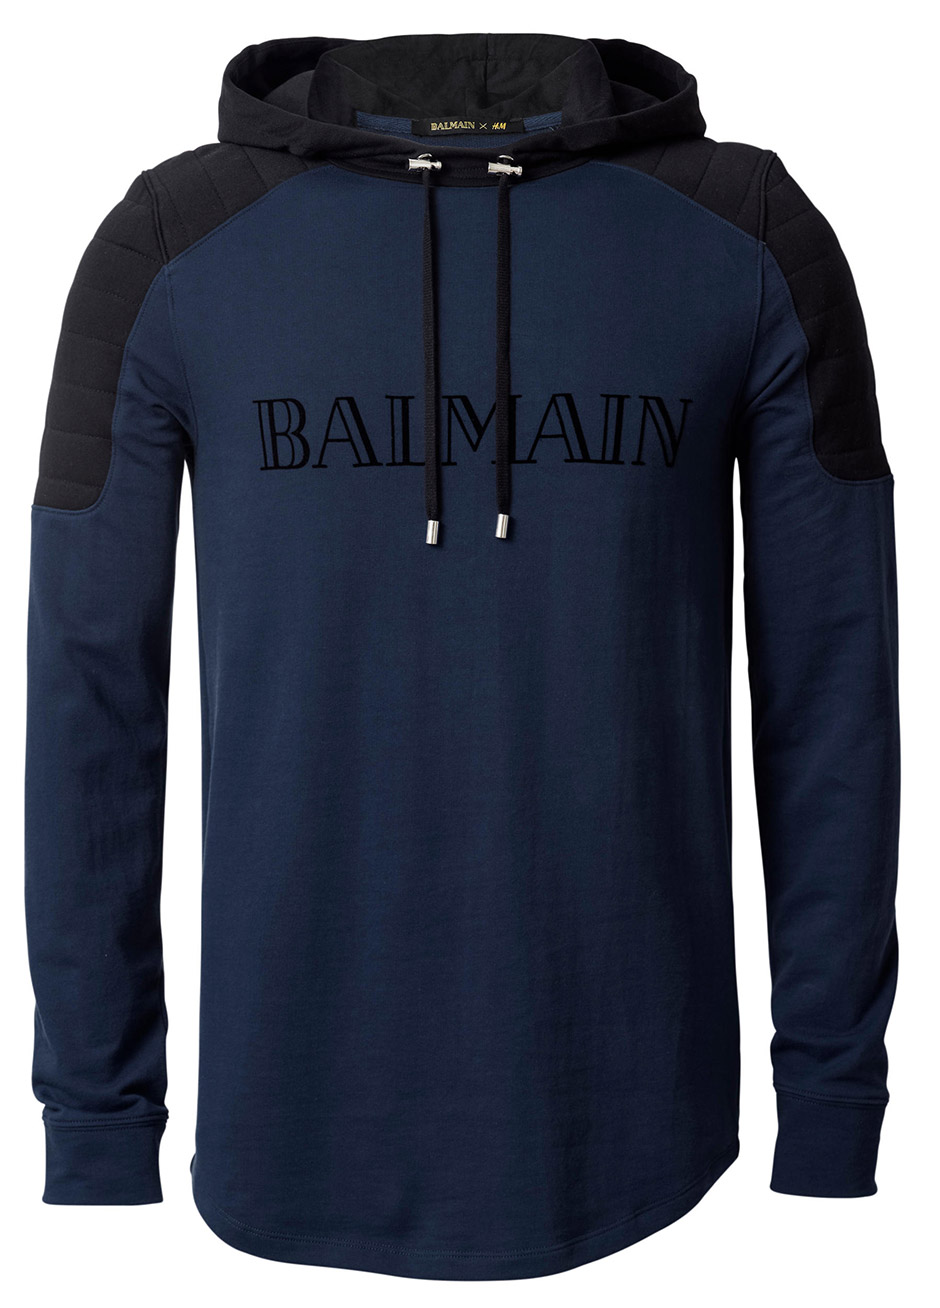 Balmain x H&M Men’s Collection + Prices - nitrolicious.com